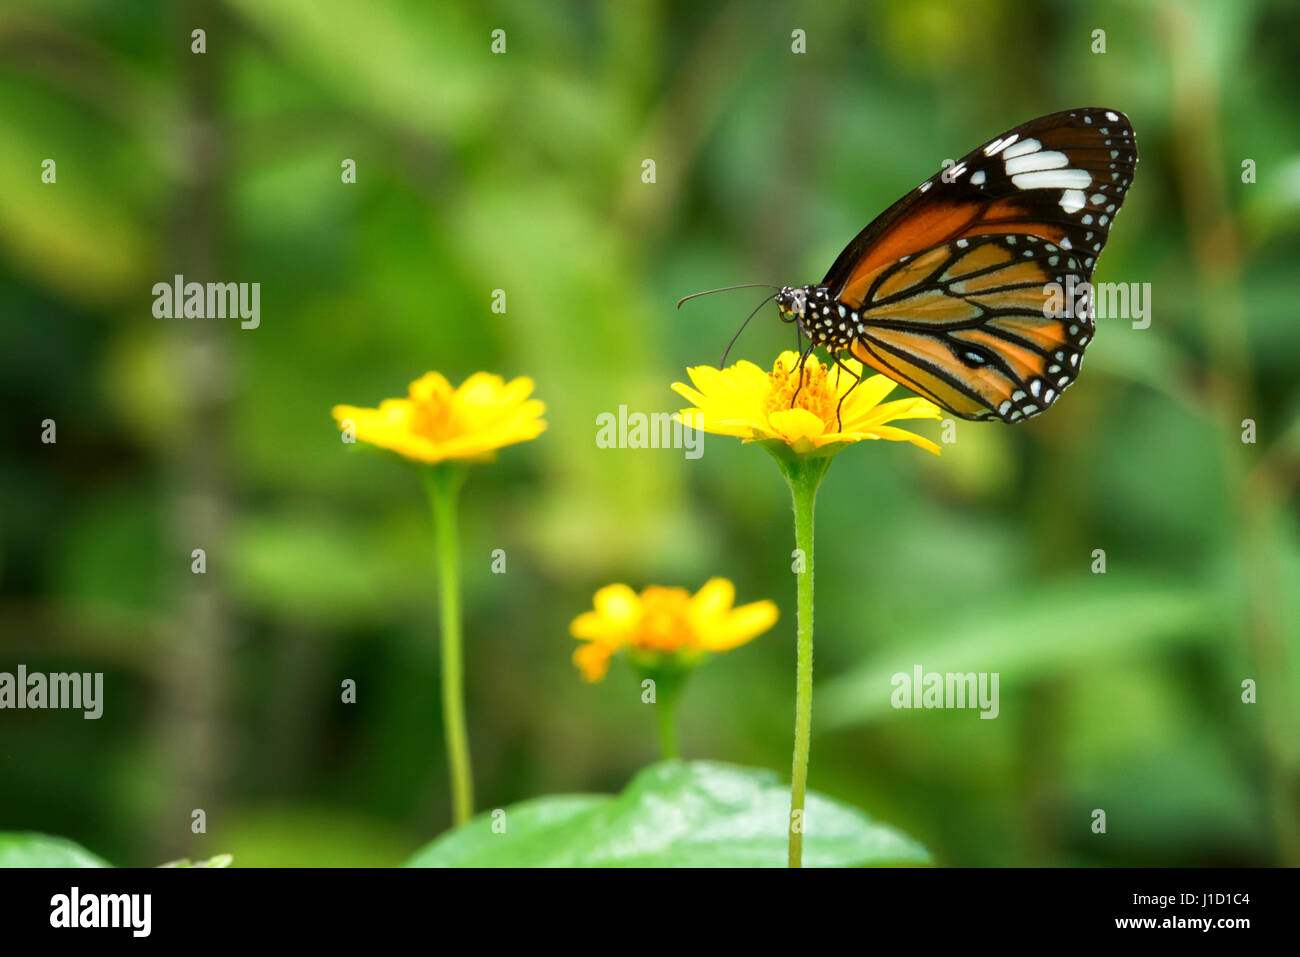 Der gestreifte Tiger (Danaus genotia) sitzt an einer gelben Pflanze. Der Schmetterling hat seinen Namen wegen der Raupen, die gelbe und schwarze Streifen haben, die einem Tiger ähneln. Die hellen Farben warnen die Raubtiere, sich von den giftigen und abwegigen Raupen fernzuhalten. Es ist einer der häufigsten Schmetterlinge in Indien. Stockfoto